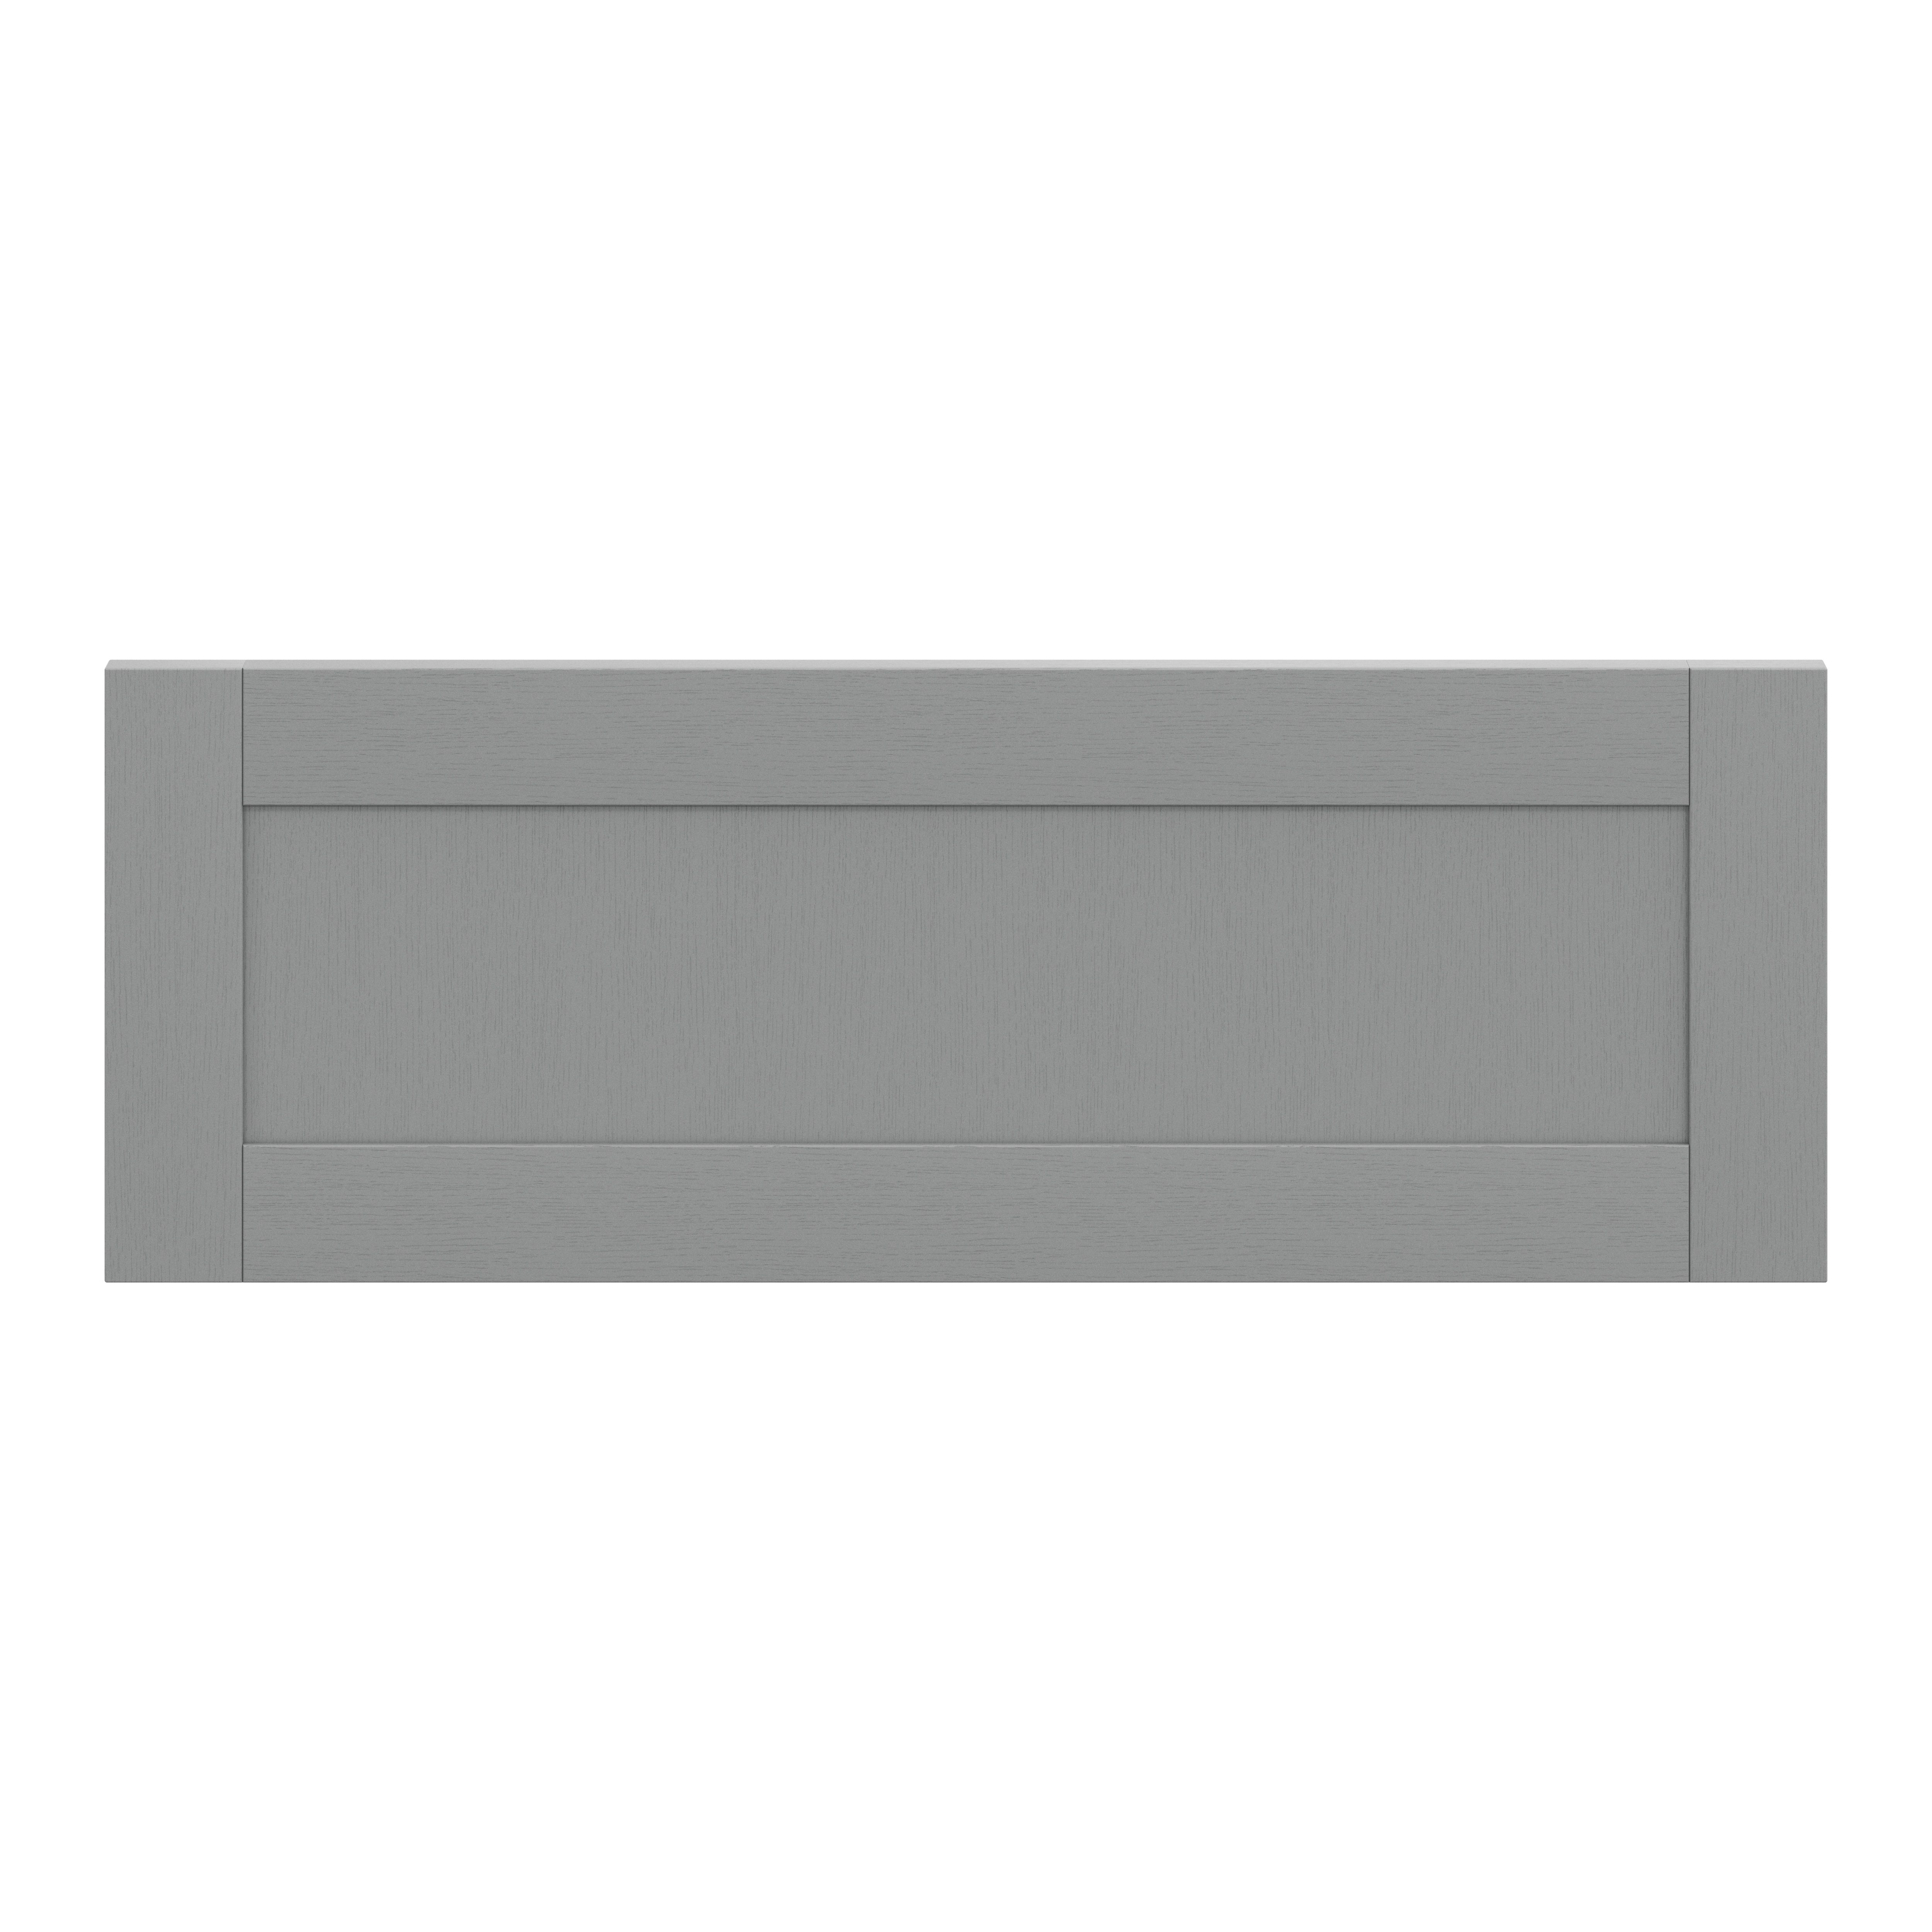 GoodHome Alpinia Matt slate grey wood effect Drawer front, bridging door & bi fold door, (W)1000mm (H)356mm (T)18mm